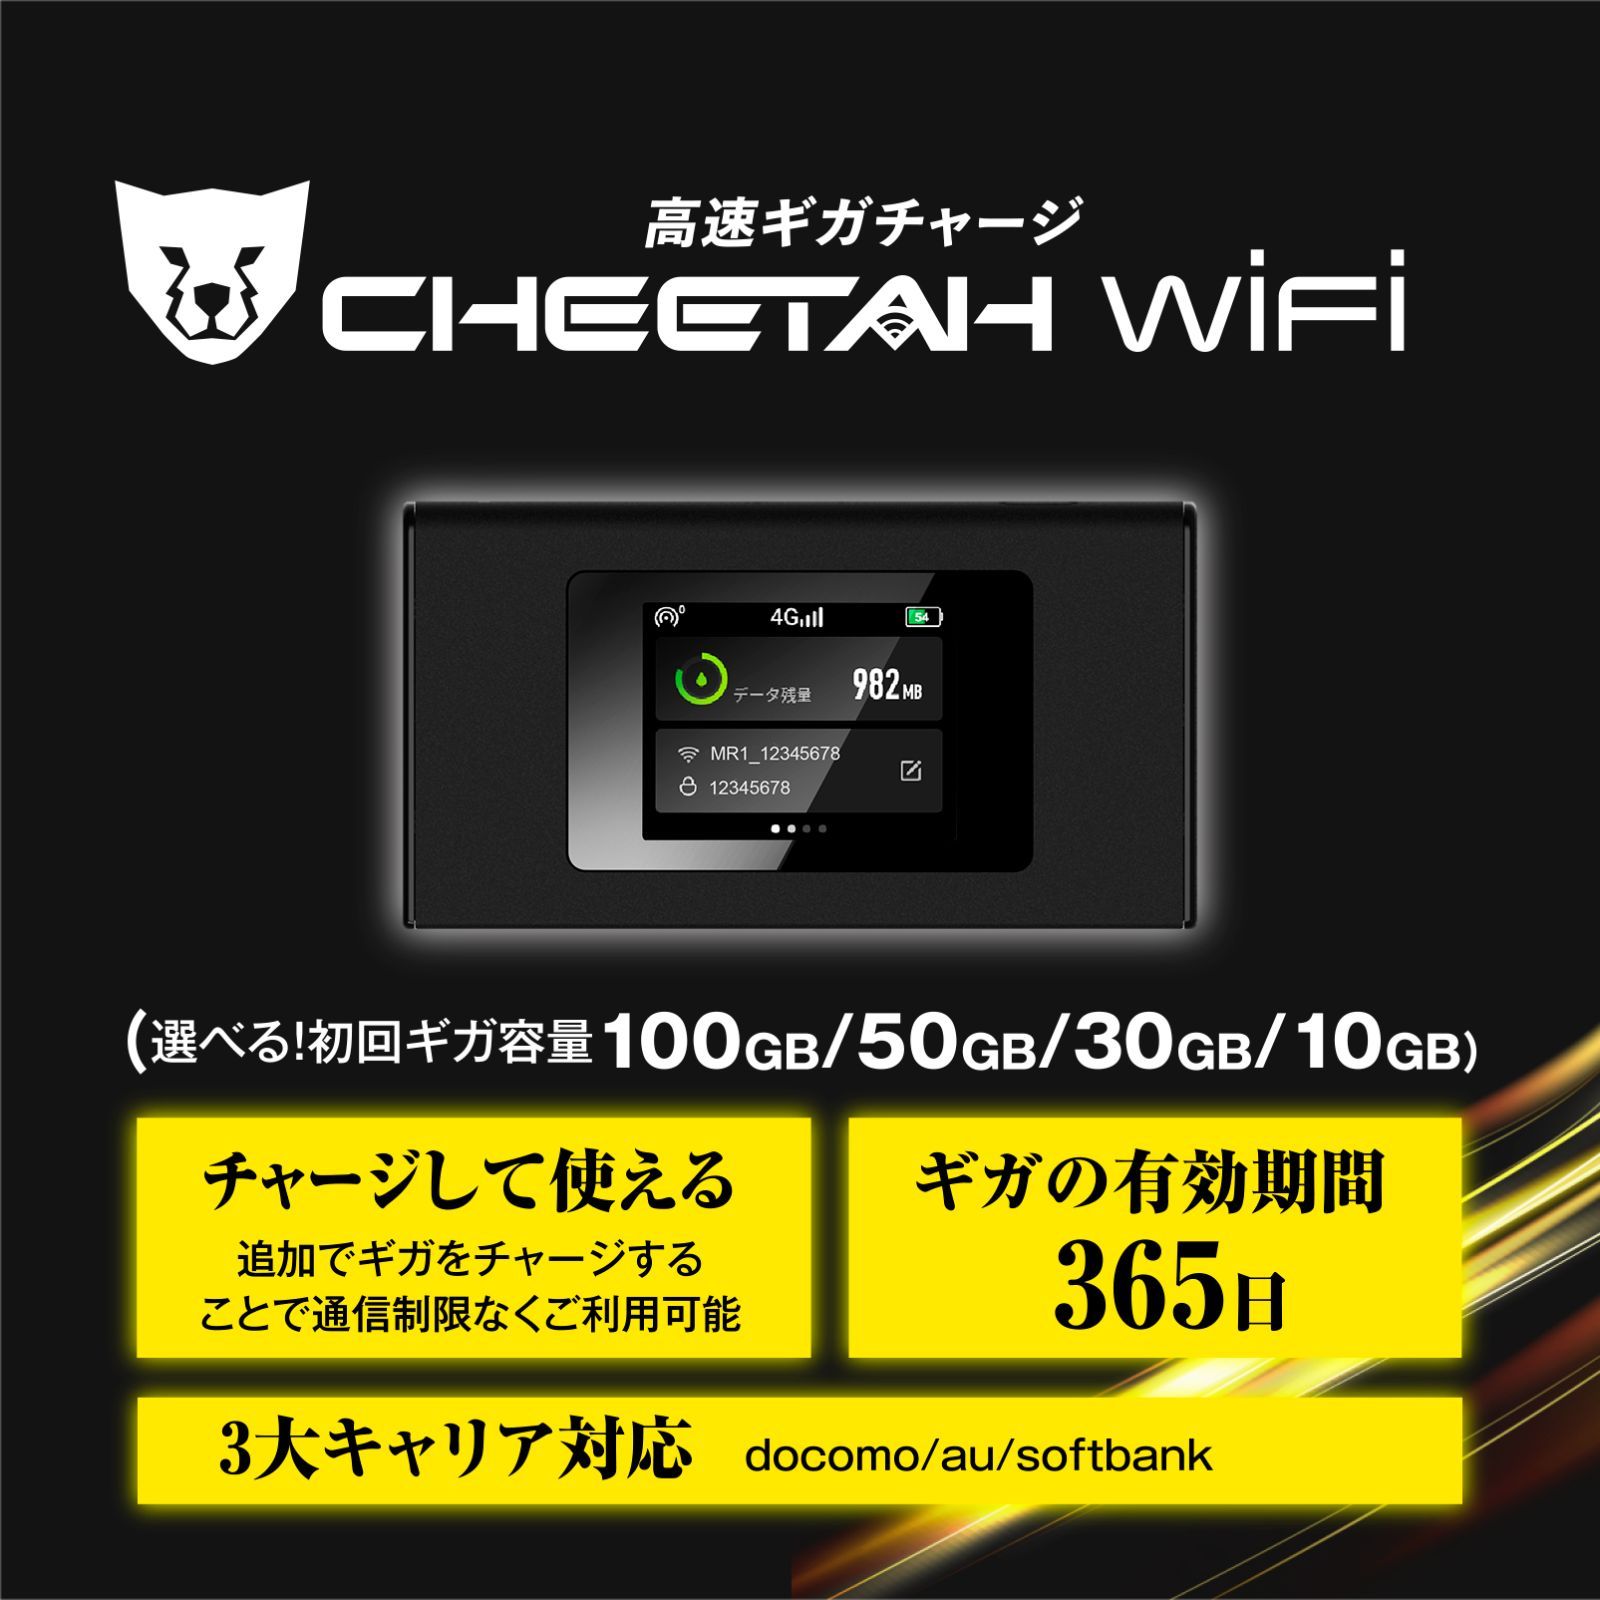 電源オンで使える【100GB付モバイルルーター】CHEETAH WiFi チーター